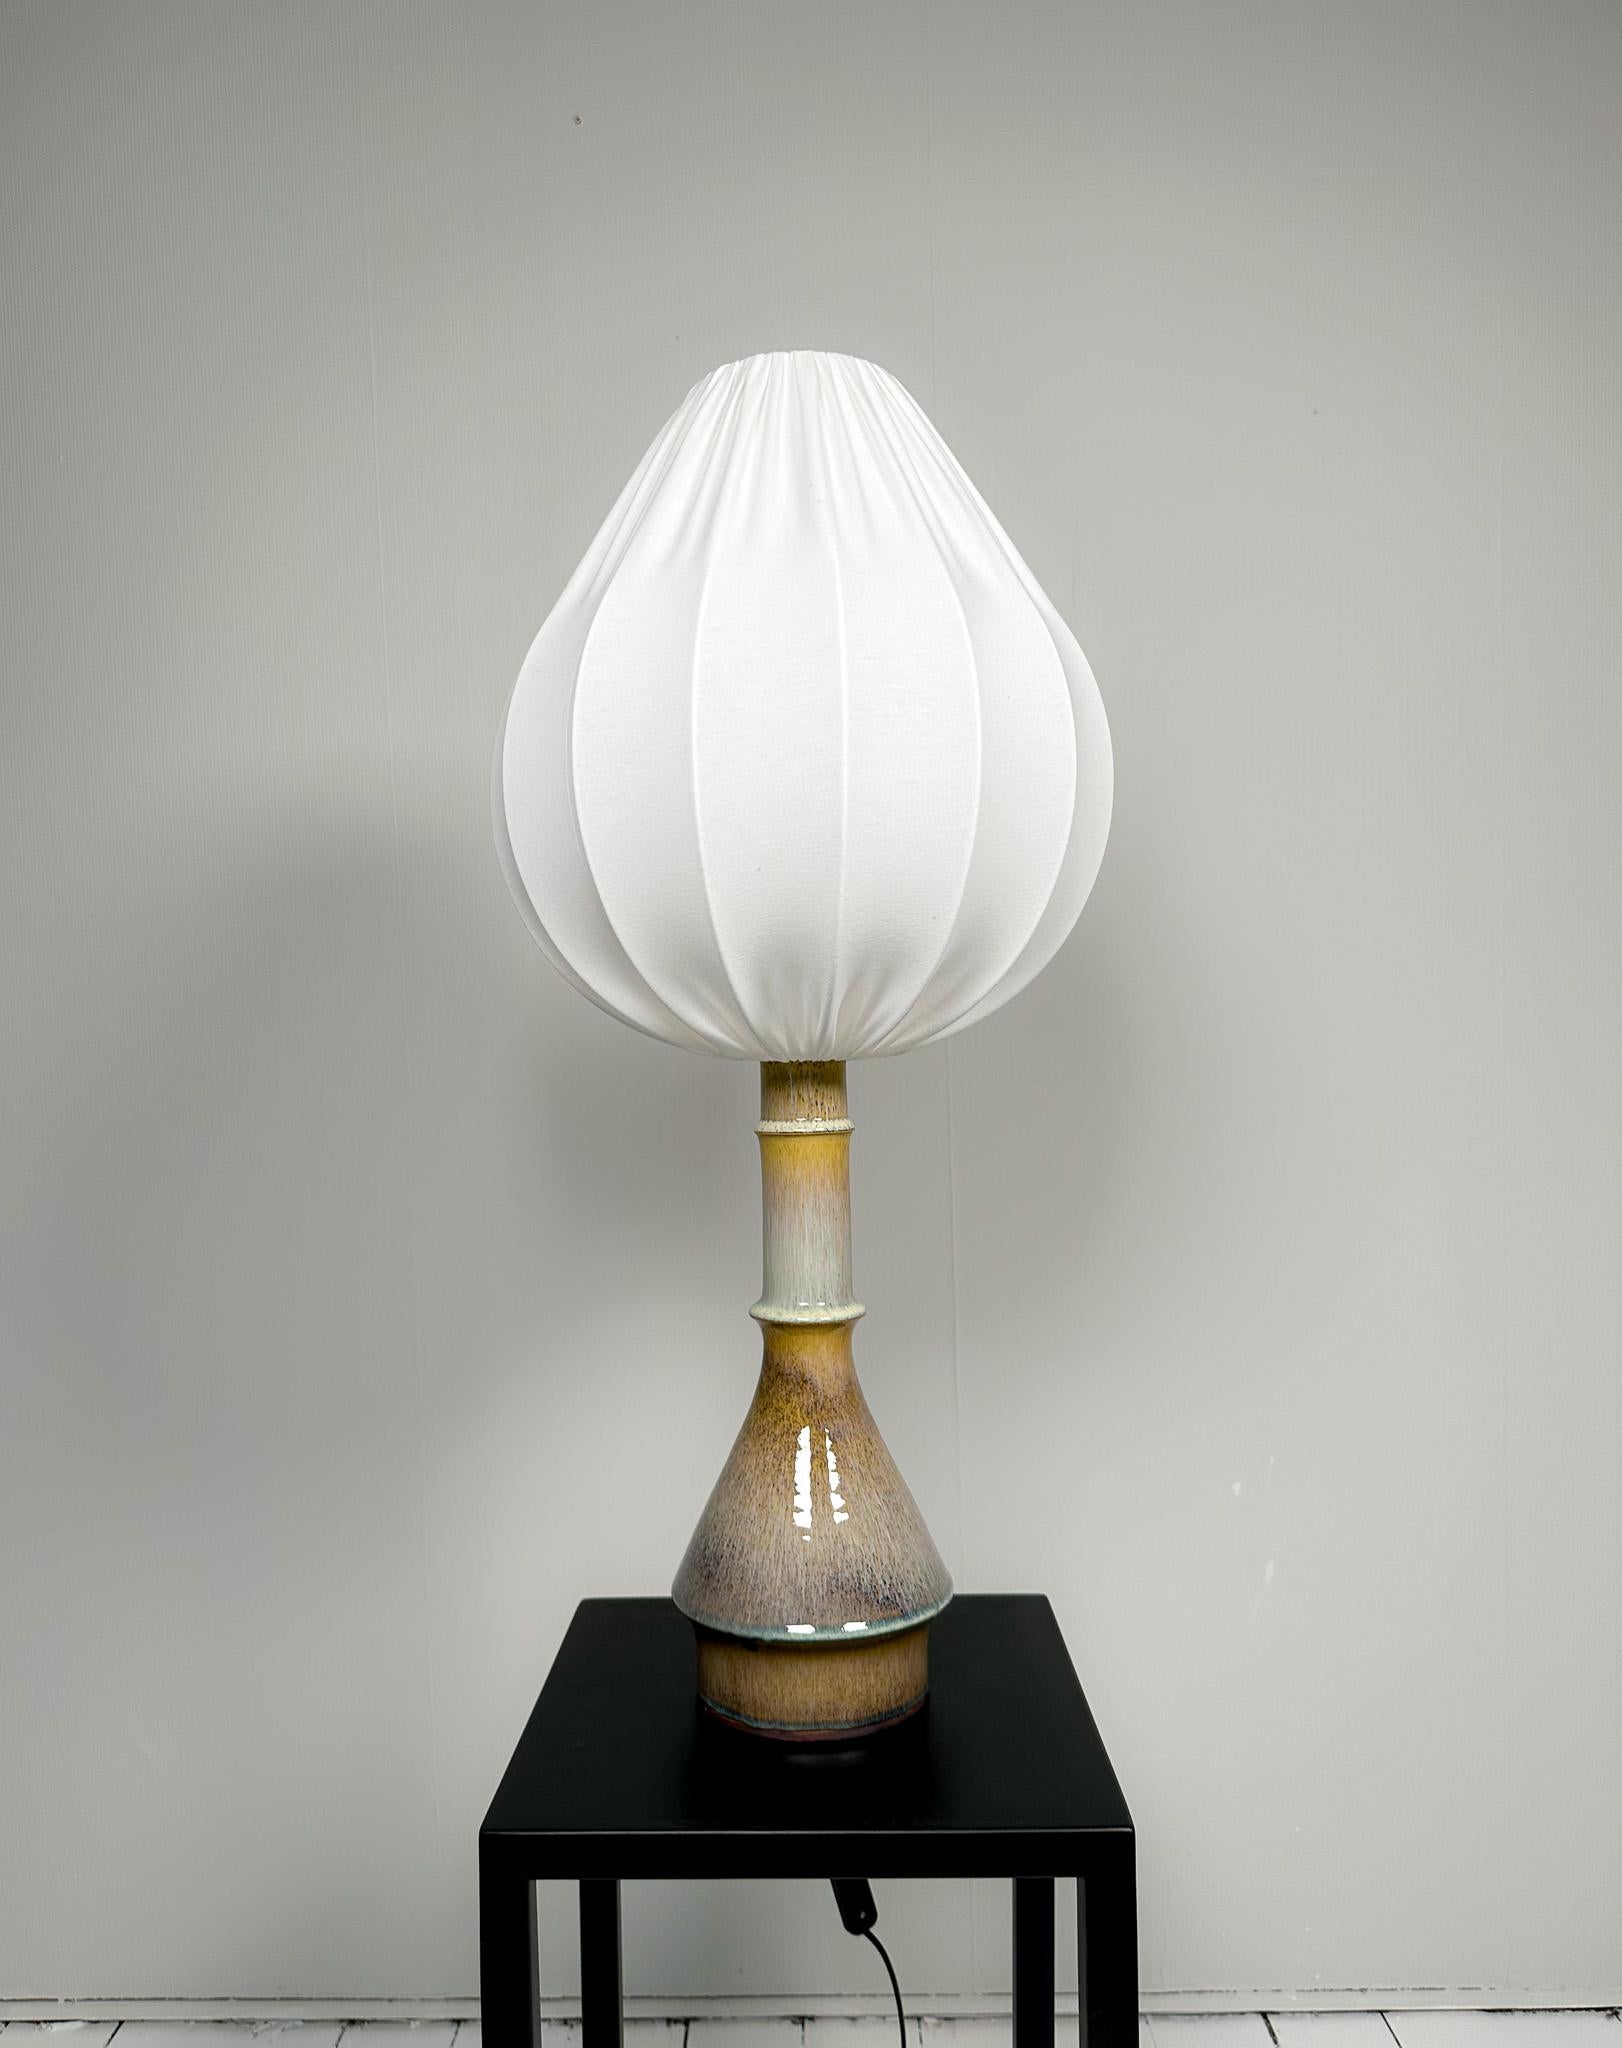 Lampe de table unique en son genre, en céramique émaillée, du designer Carl Harry Harris Stålhane, fabriquée en Suède pour Rörstrand dans les années 1950.

Le fond circulaire s'associe à la partie supérieure plus petite, le tout combiné à une